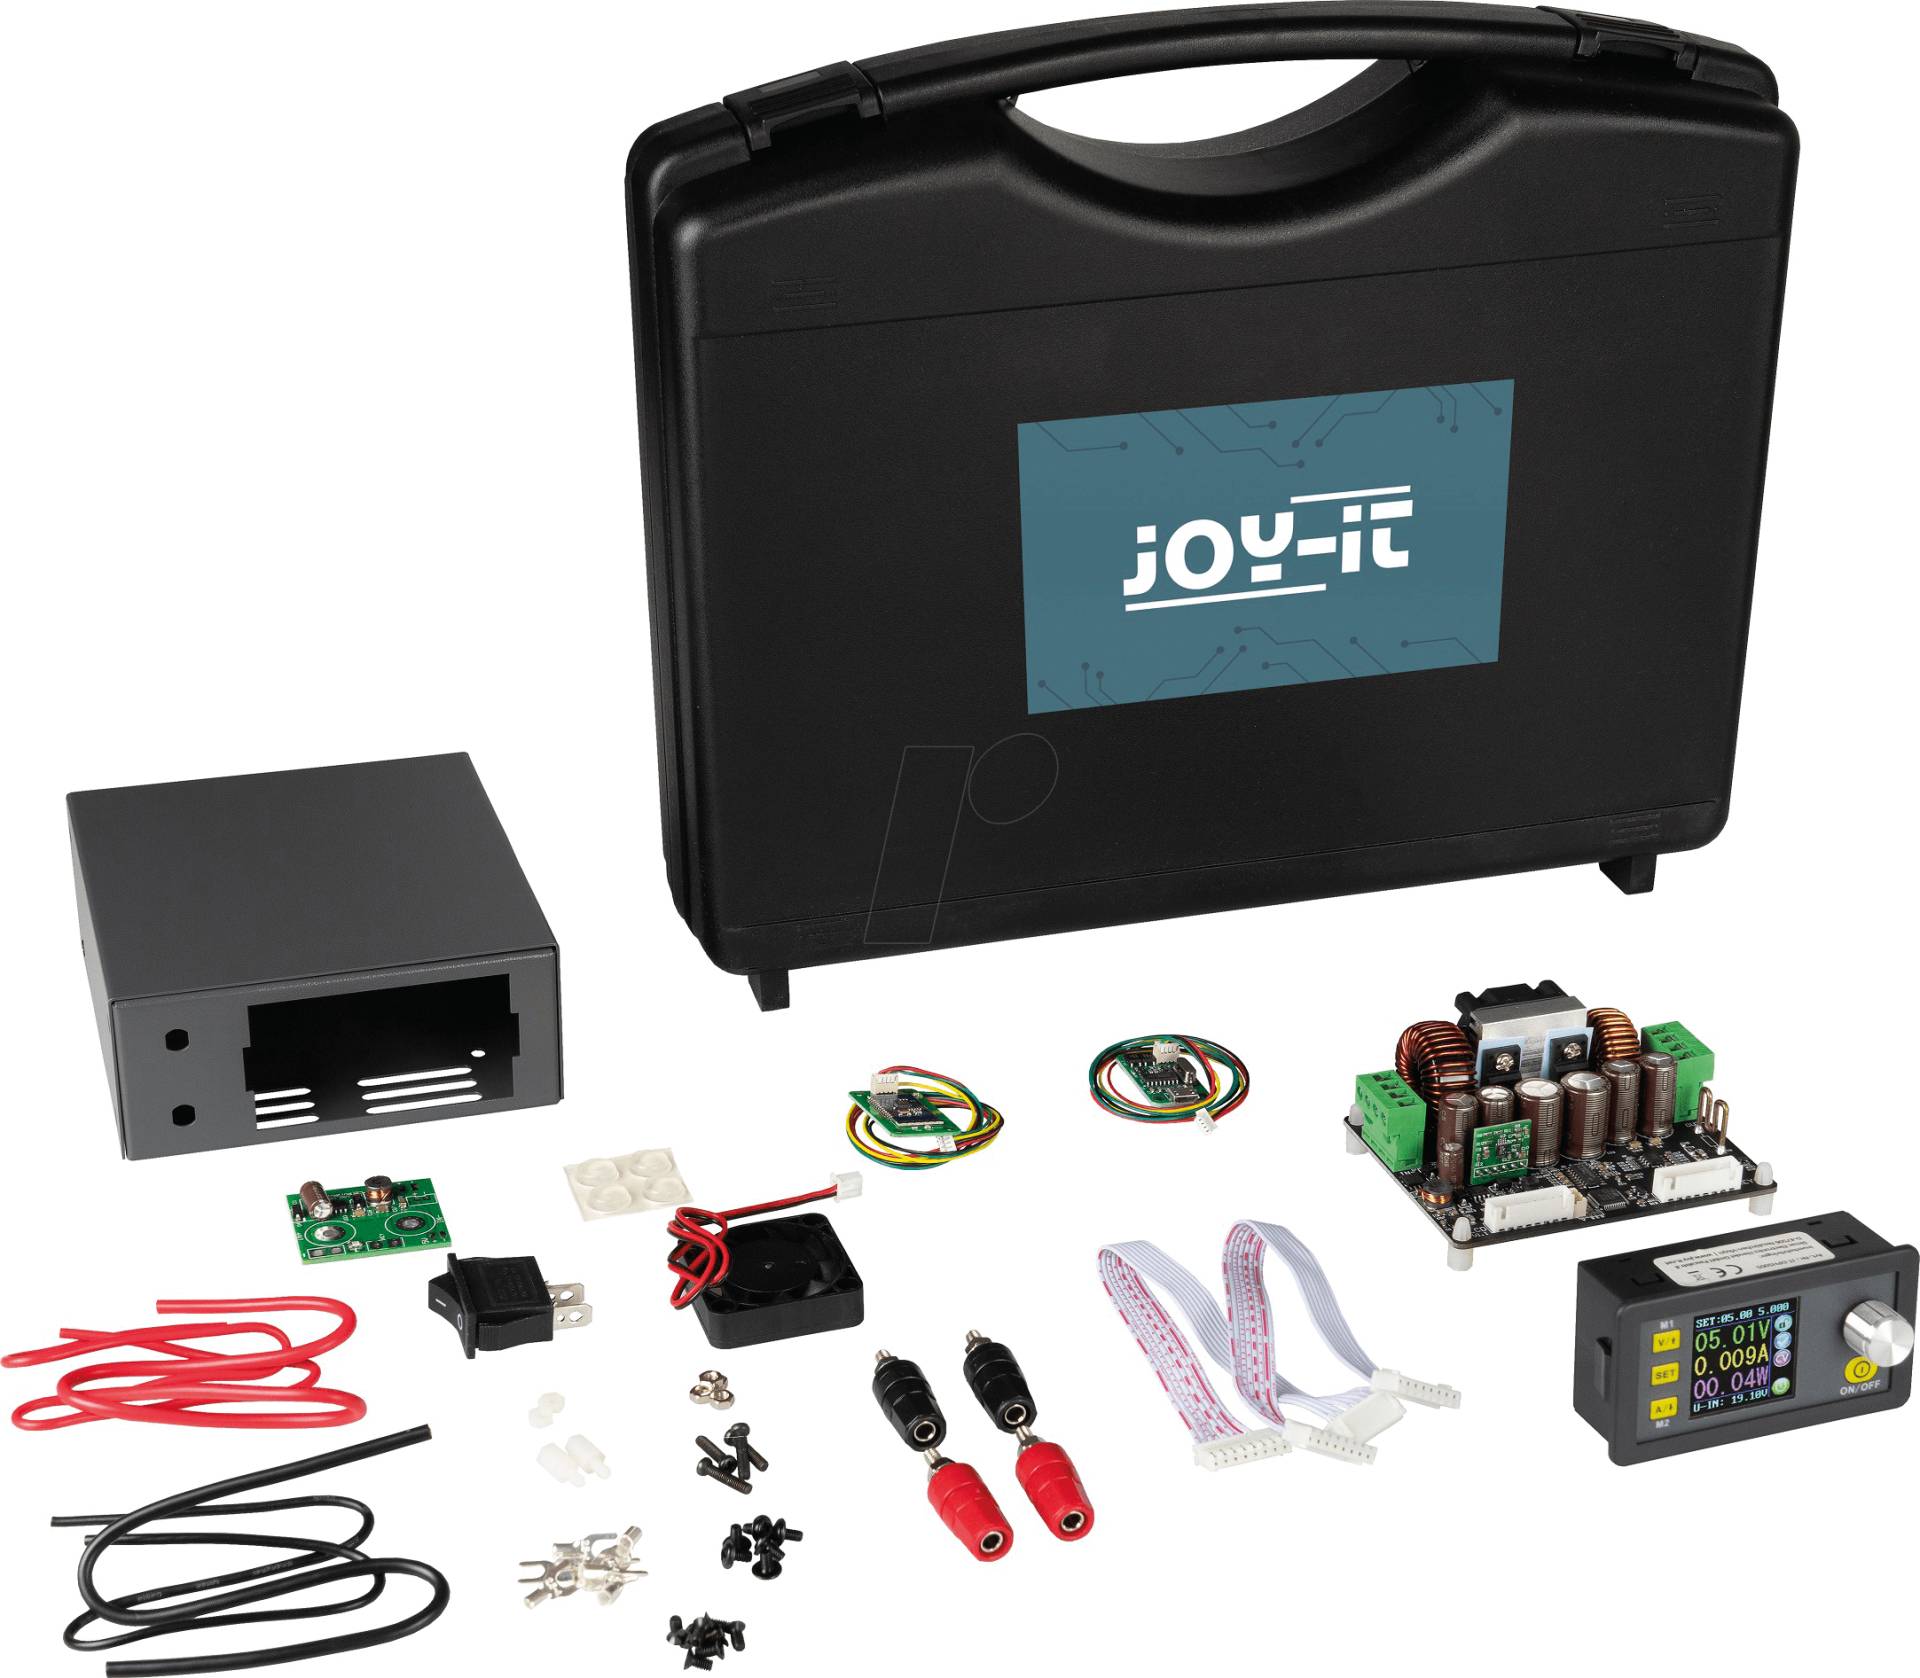 JOY-IT DPH 5005S - DPH Labornetzgerät, 0 - 50 V, 0 - 5 A, Set von JOY-IT